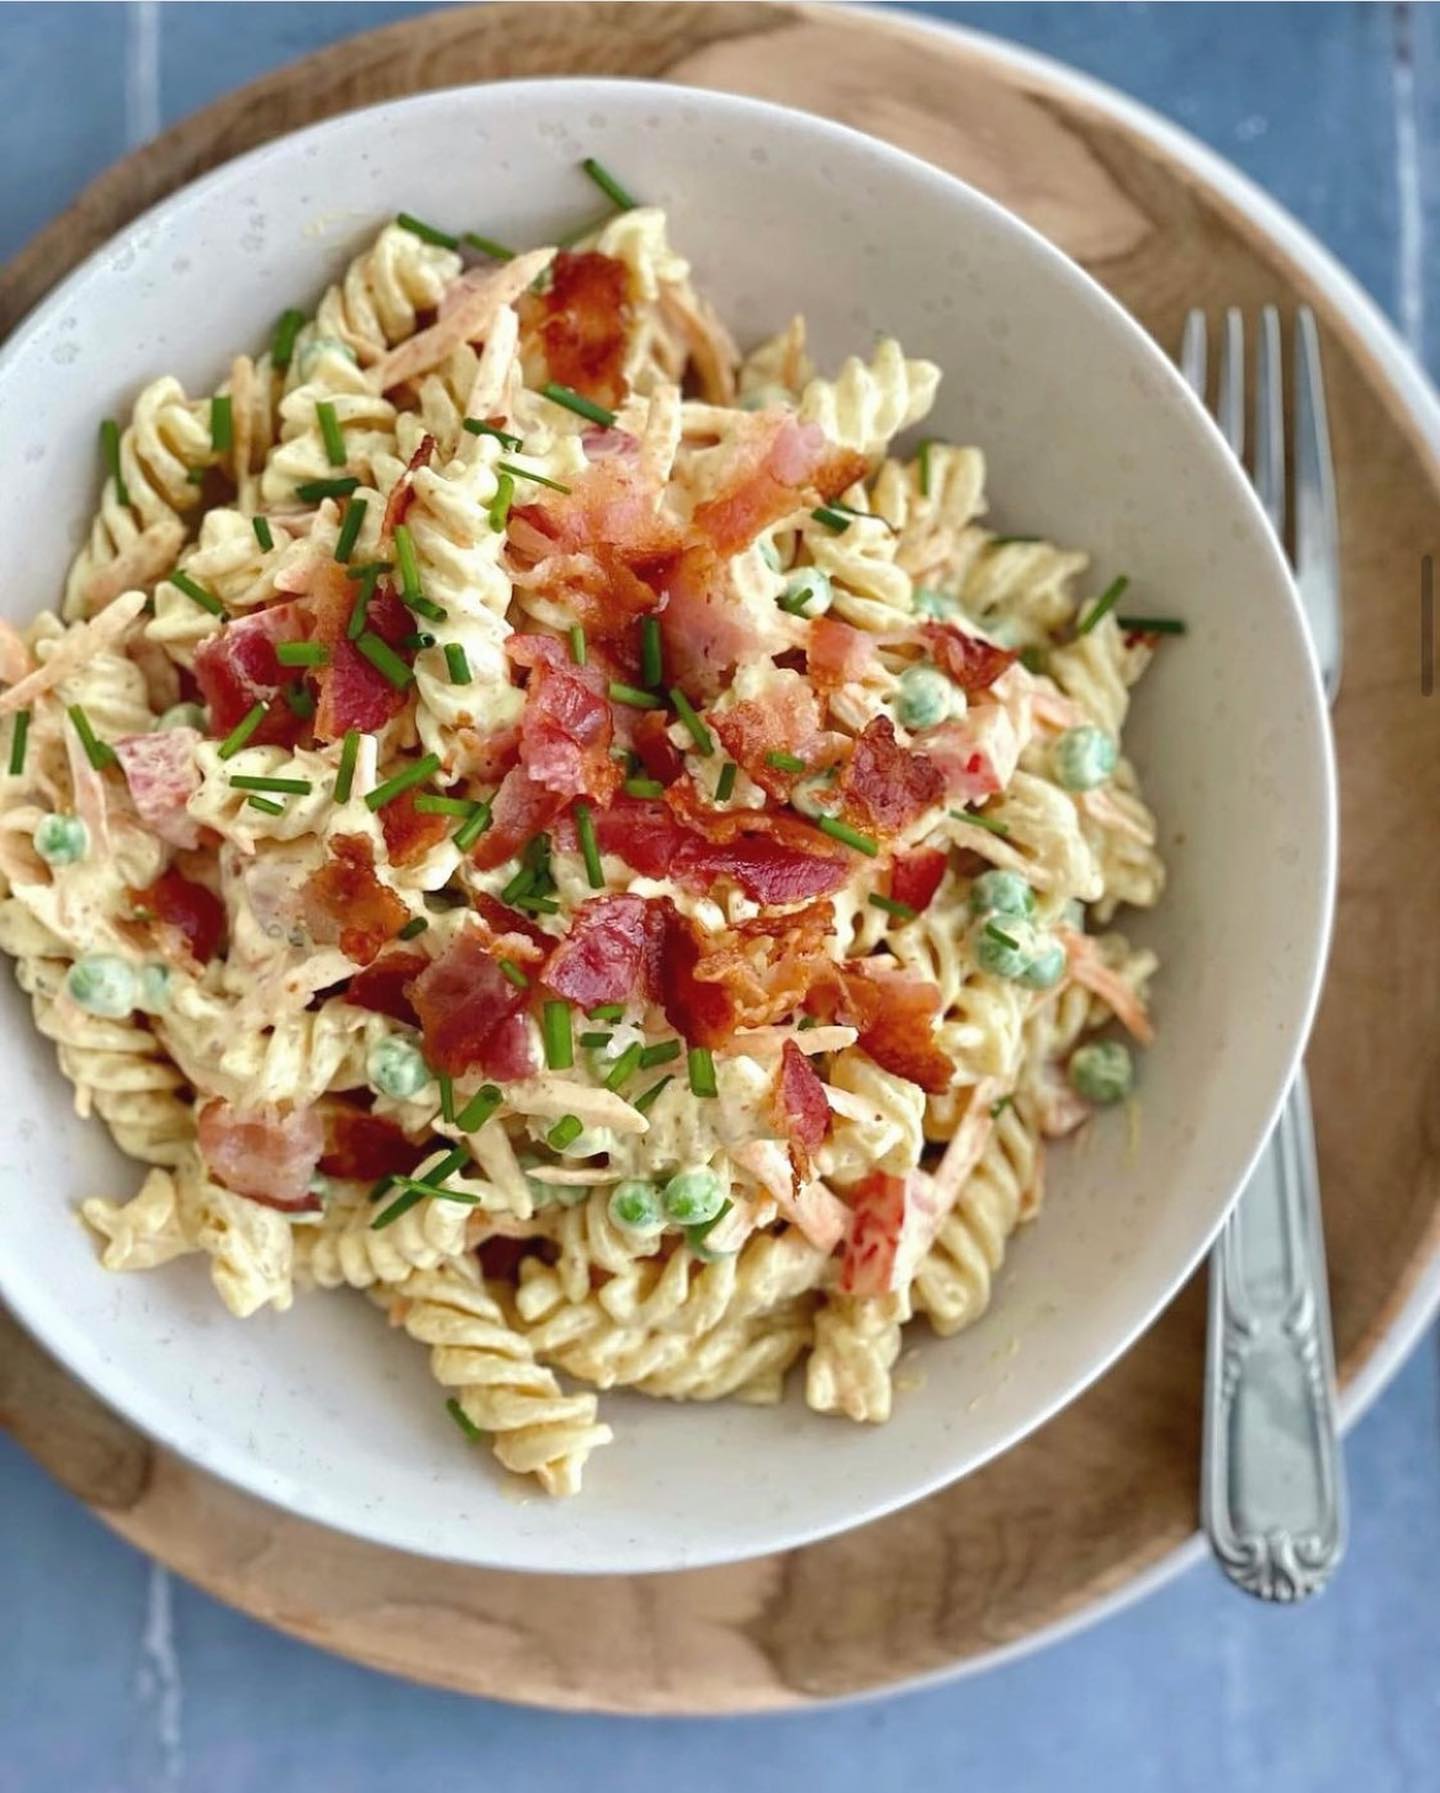 ☀️ Pastasalat med karrydressing og bacon ☀️

Det her er en klassisk pastasalat med en lækker karrydressing. Den kan både bruges som tilbehør til eks et kyllingebryst eller grillmad 🙃

Et stort hit herhjemme, som både er nem og lækkert 👌

💡Husk at du kan gemme billedet nederst i højre hjørne på bogmærket 
💡Opskriften kan findes på www.madmusen.dk søg blot på “pastasalat” eller benyt midlertidigt link i bio 

#aftensmad #deldinmad #dinner #middag #sundmad #sunnmat #healthyfood #salad #salat #pastasalad #pastasalat #nrkmat #godtno #børnevenligmad #svenskmat #grill #nemmad #hverdagsmad #instafood #kylling #chicken #grillmad